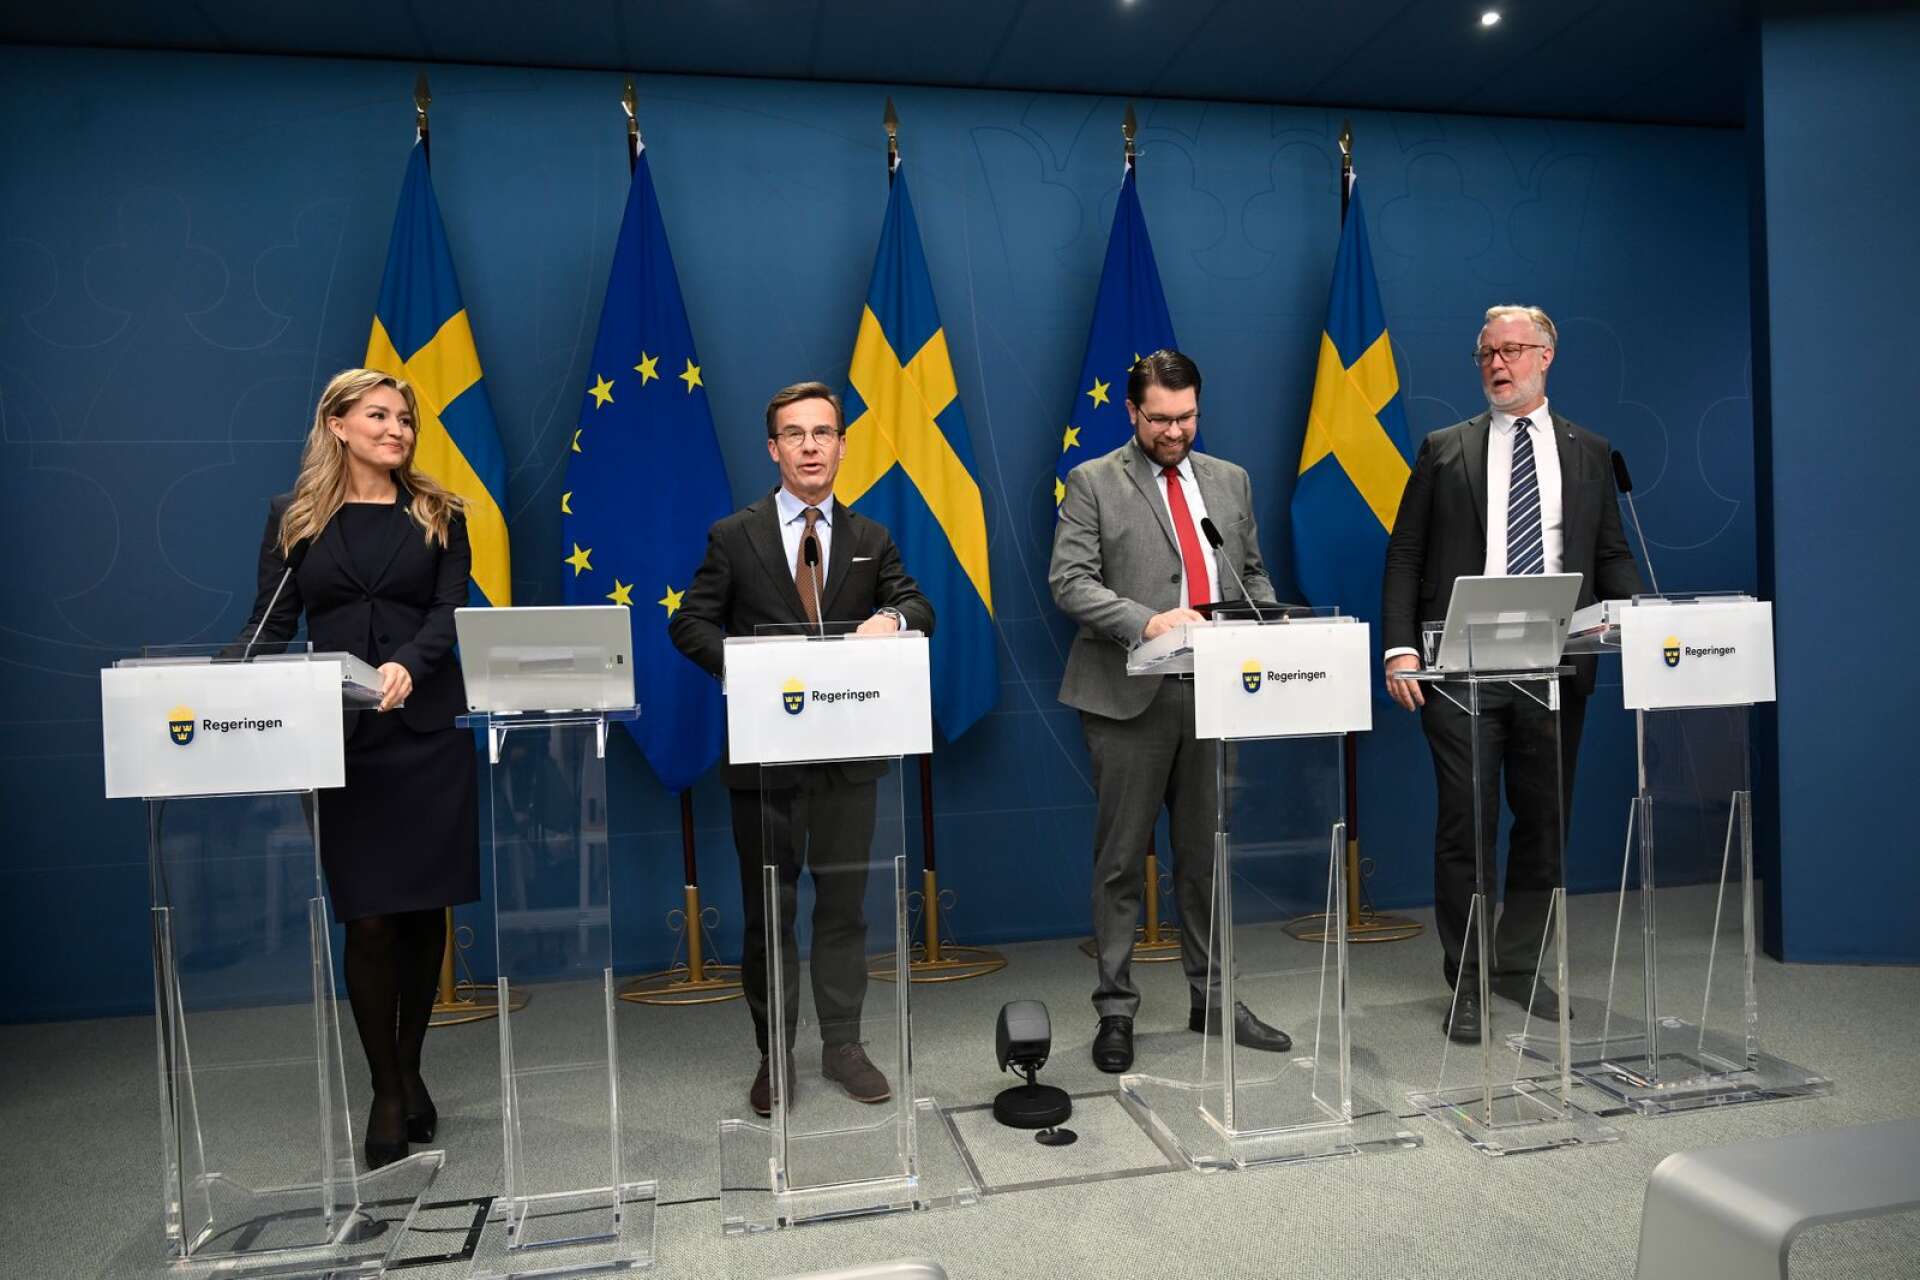 Men utvecklingen går att vända. Den nya regeringen tar nu de första stegen mot en nystart för Sverige, skriver Edward Riedl och Marléne Lund Kopparklint.